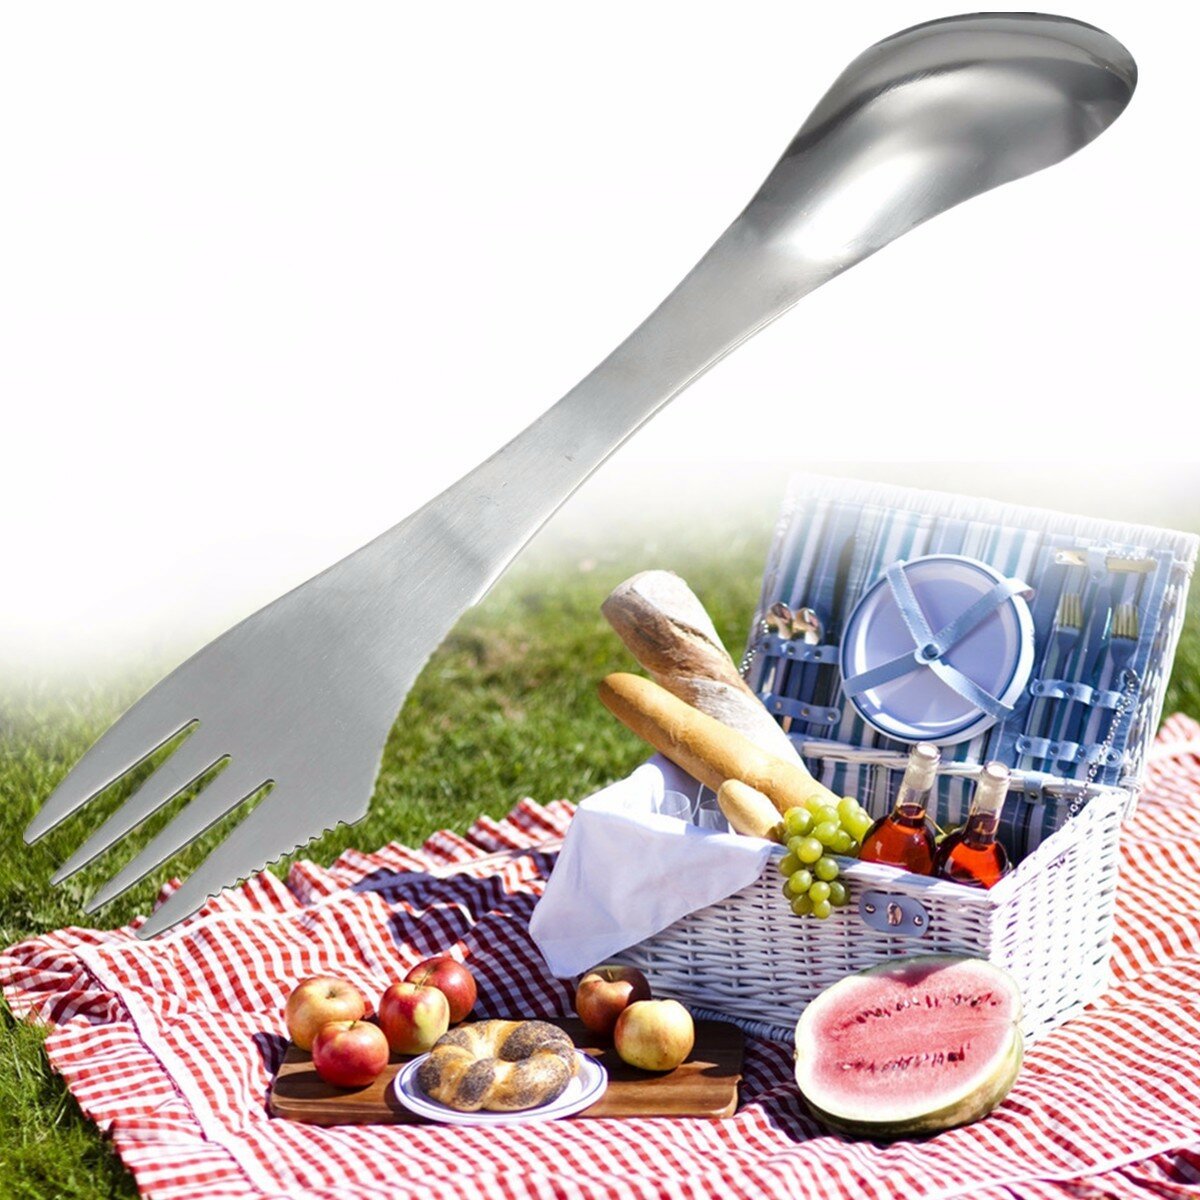 3 in 1 cucchiaio di metallo cucchiaio forchetta posate utensile multifunzione da tavola in acciaio inox portatile campeggio gadget picnic